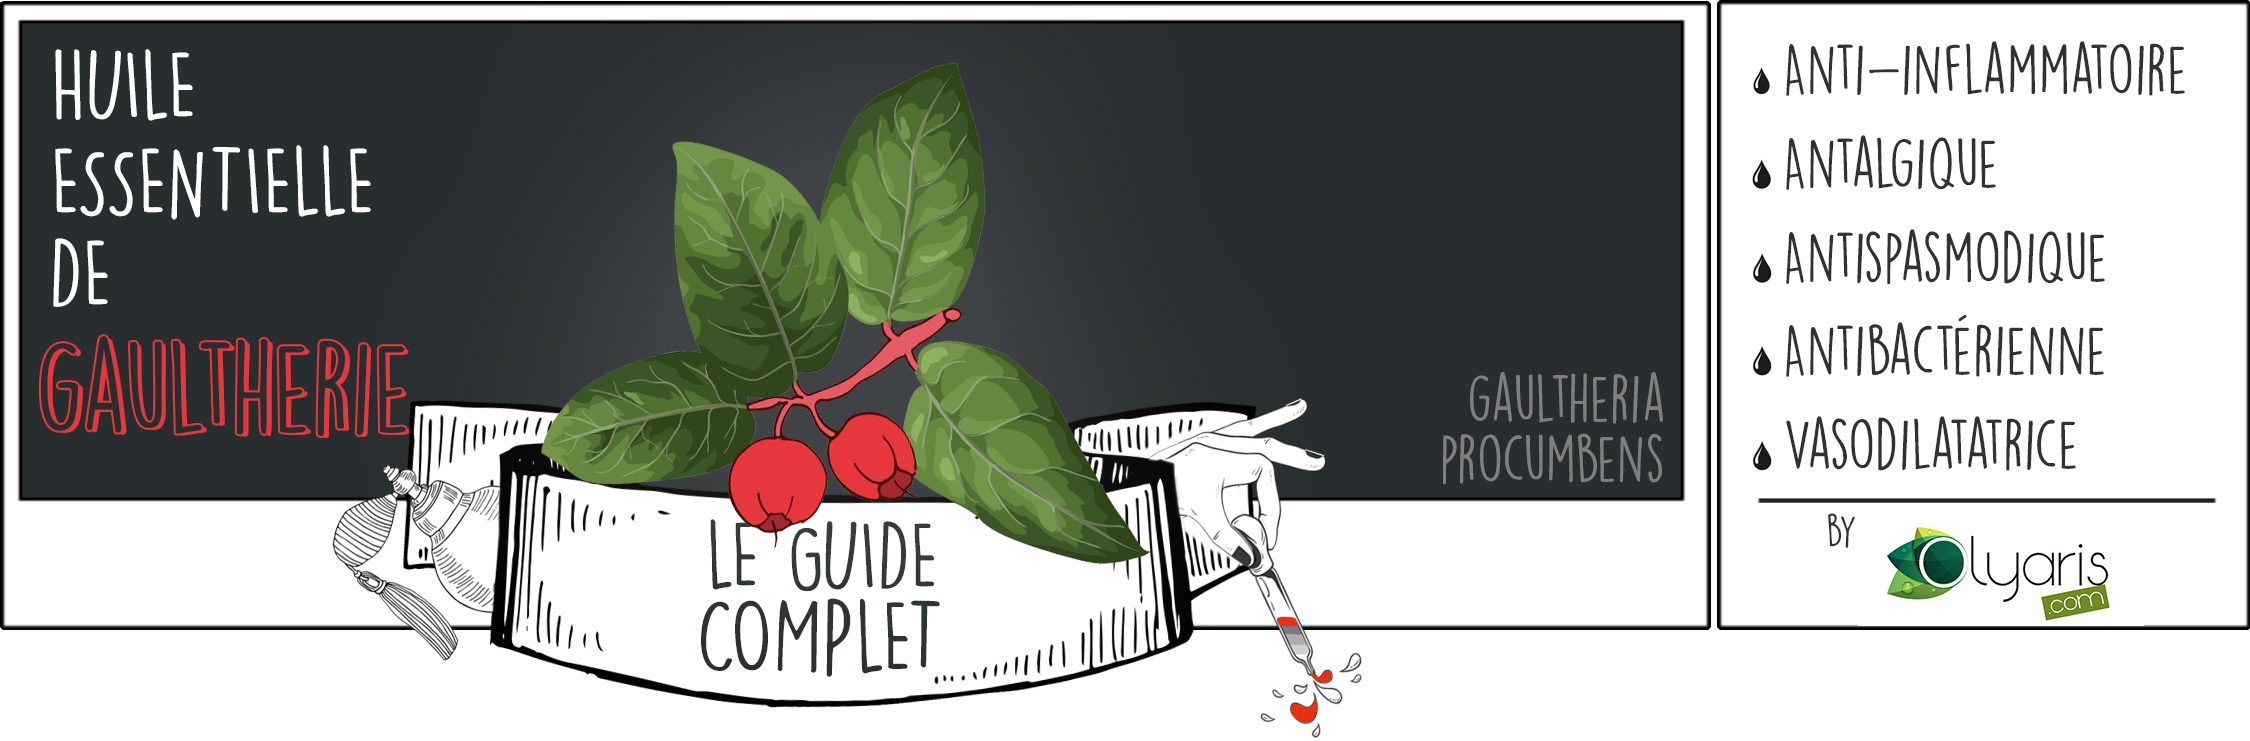 Huile Essentielle de Gaulthérie : le Guide Complet par Olyaris